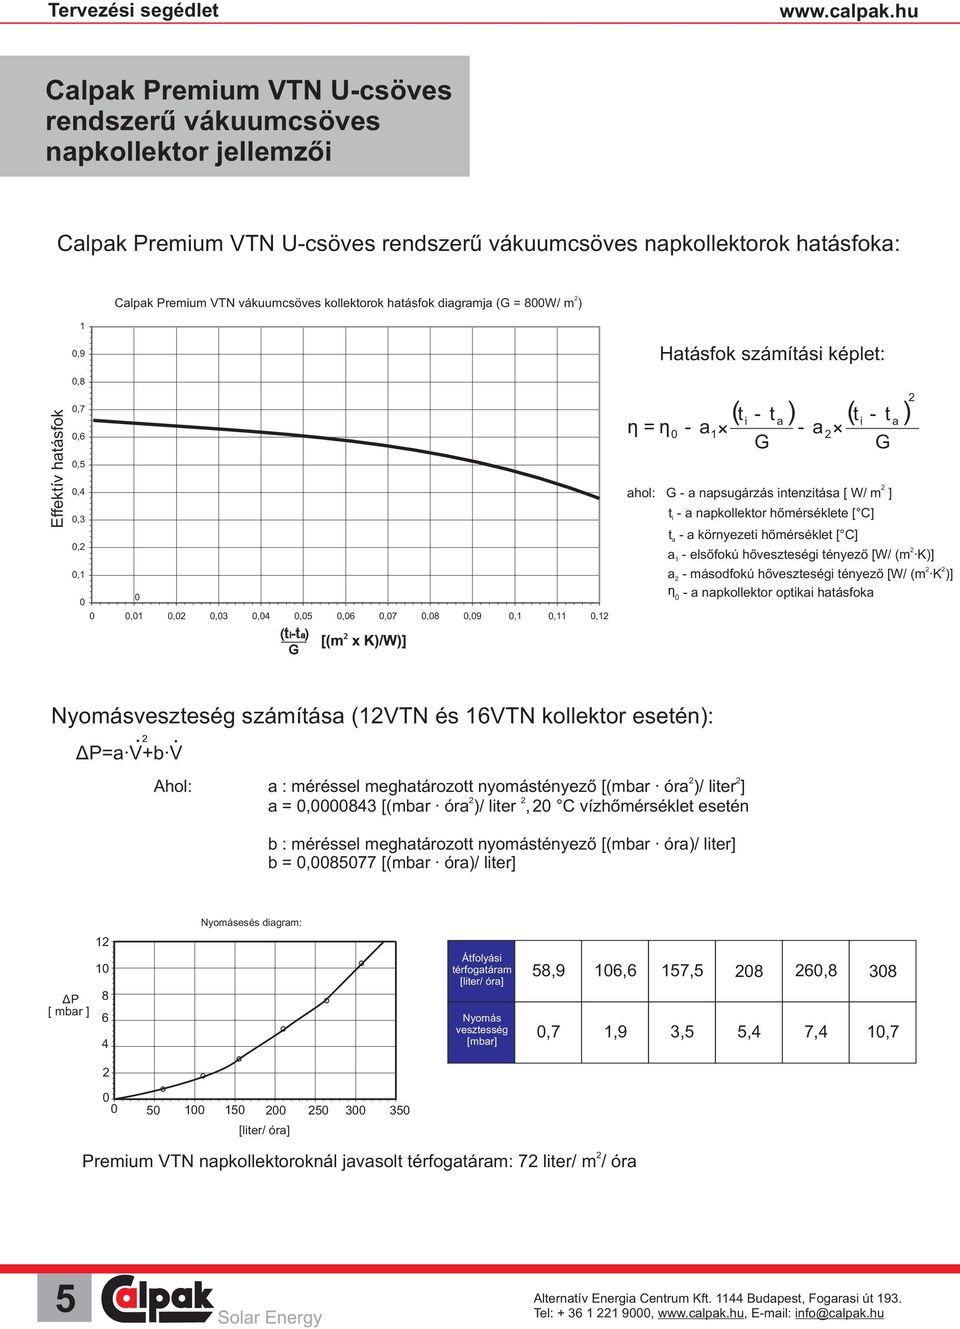 hőveszteségi tényező [W/ (m K)] a - másodfokú hőveszteségi tényező [W/ (m K )] - a napkollektor optikai hatásfoka a Nyomásveszteség számítása (1VTN és 16VTN kollektor esetén): KΔP=a V+b V Ahol: a :